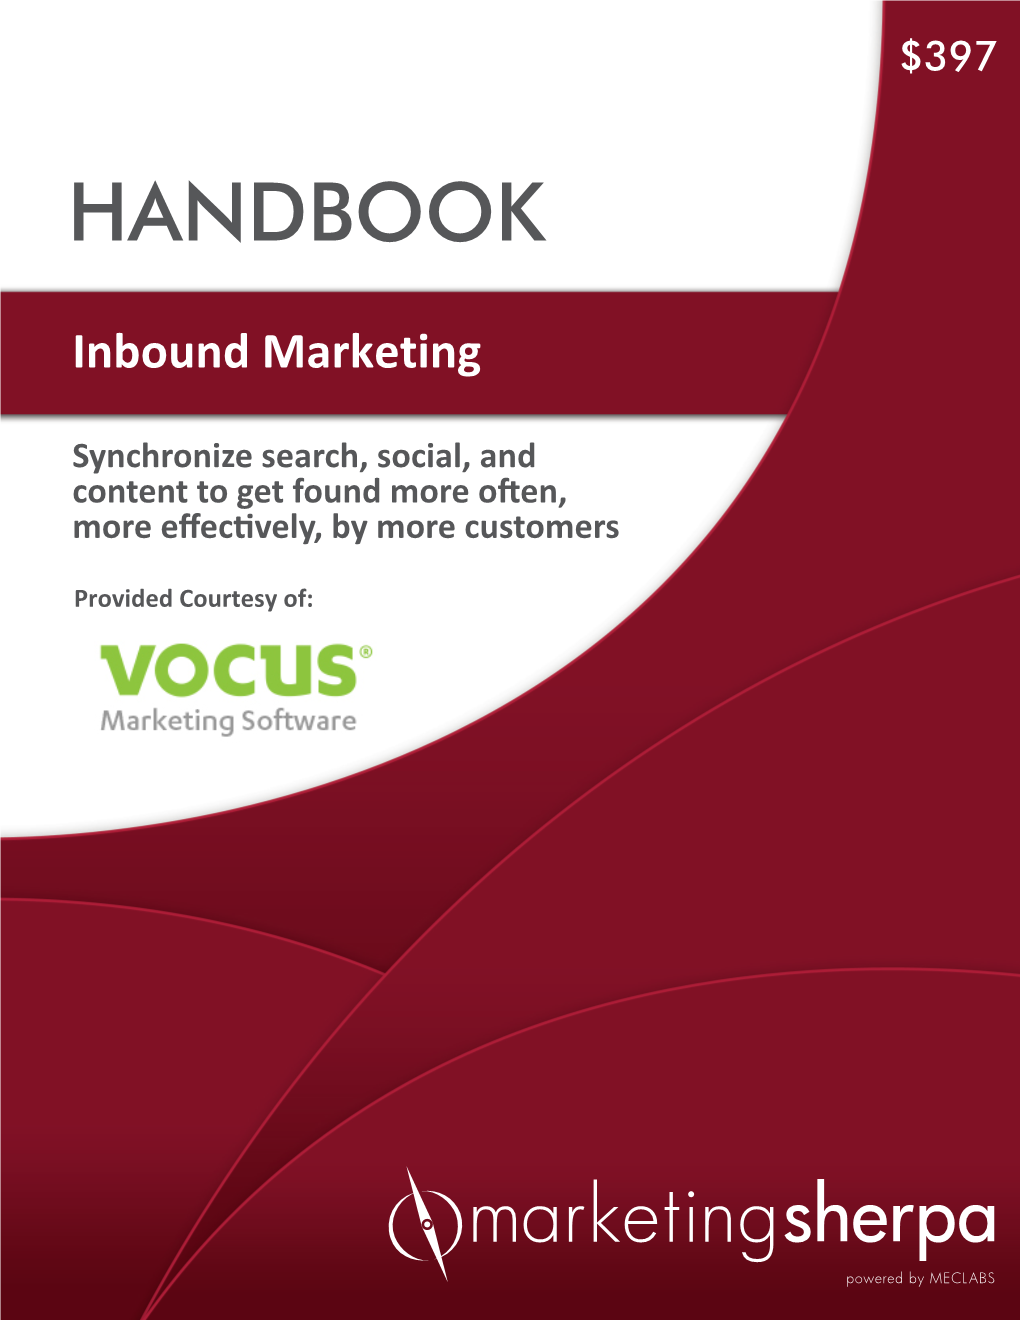 Inbound Marketing Handbook